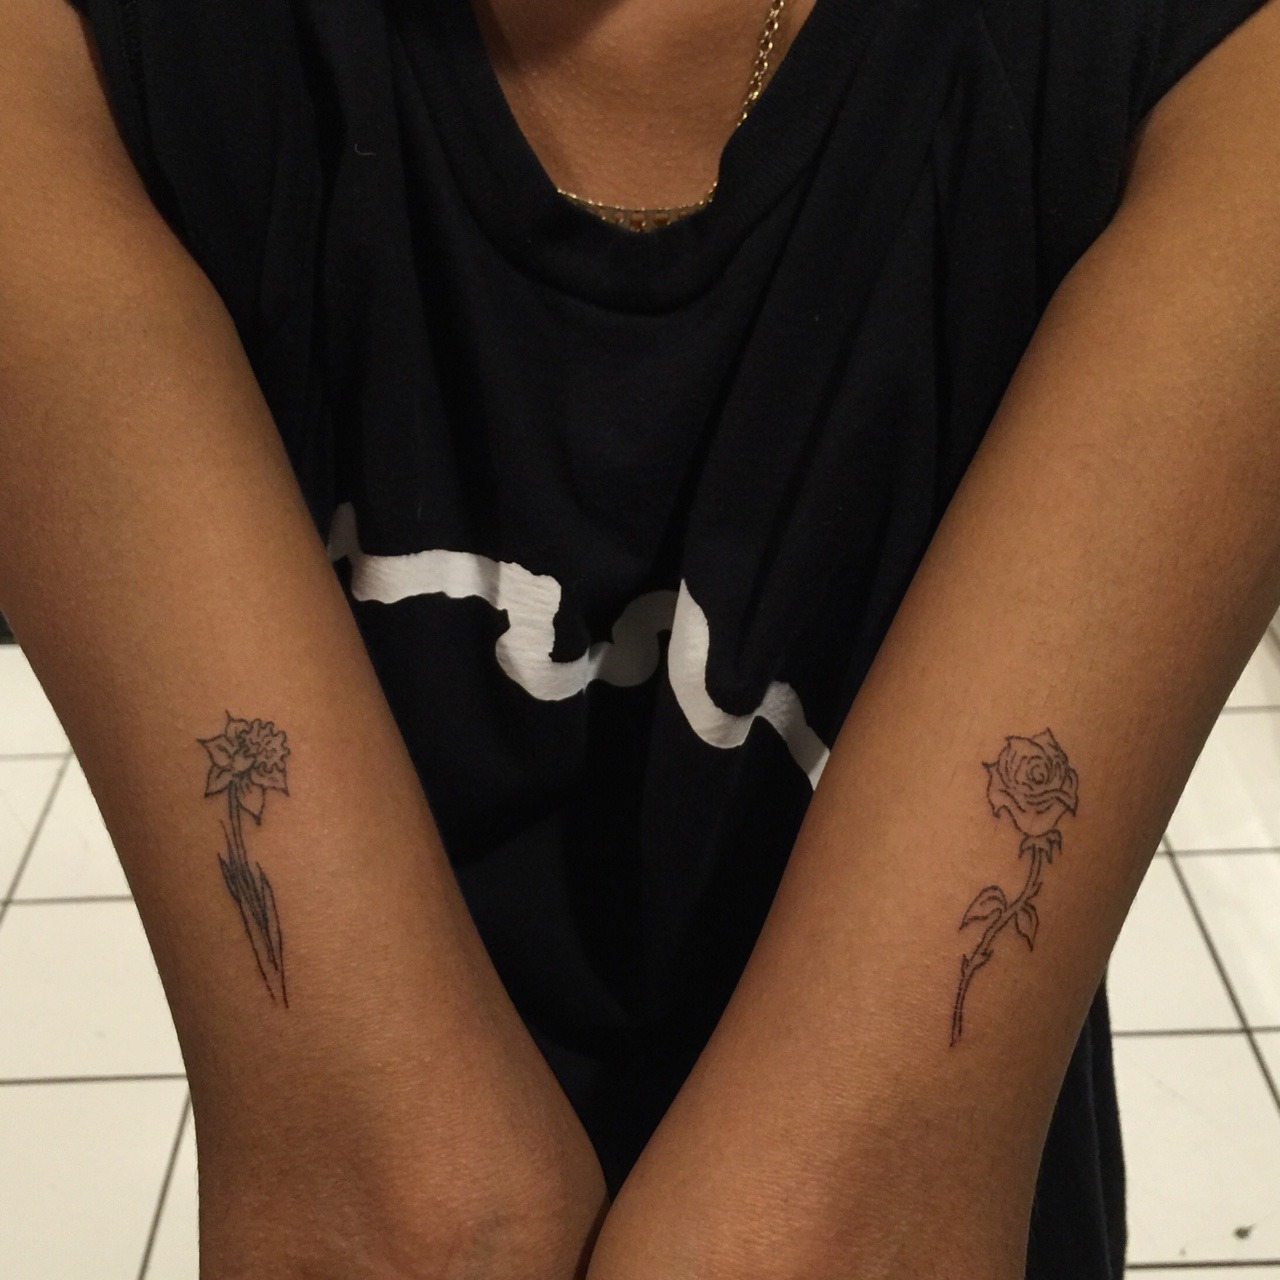 ernestlinden:
“ flower tattoos by me
”